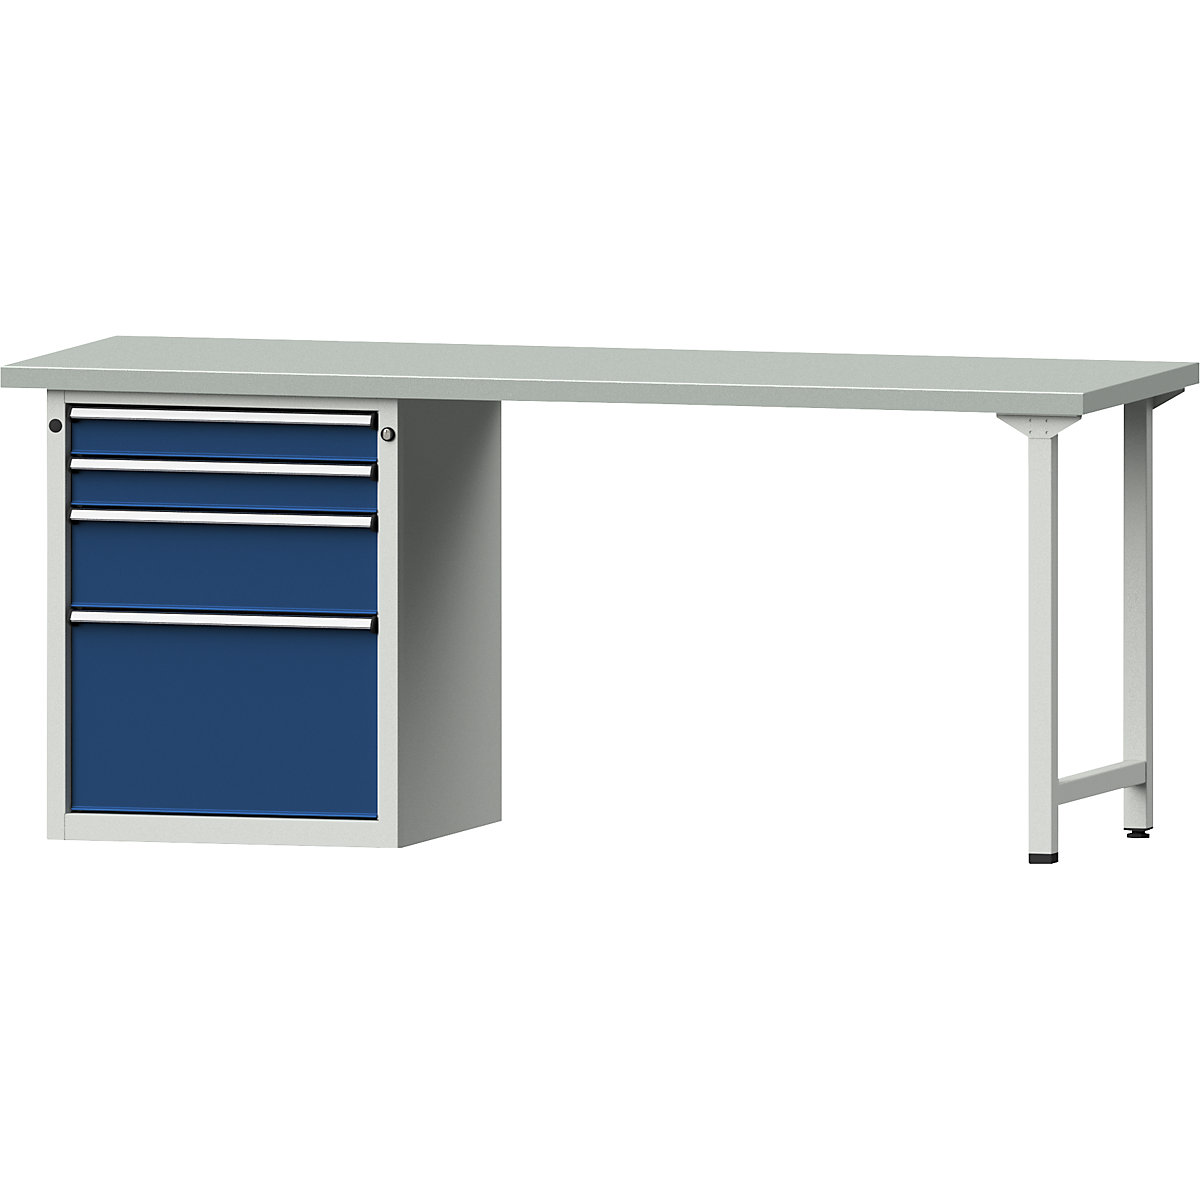 Dílenský stůl s rámovou konstrukcí – ANKE, 4 zásuvky, 2 x 90, 1 x 180, 1 x 360 mm, deska s potahem z ocelového plechu, šířka 2000 mm-9